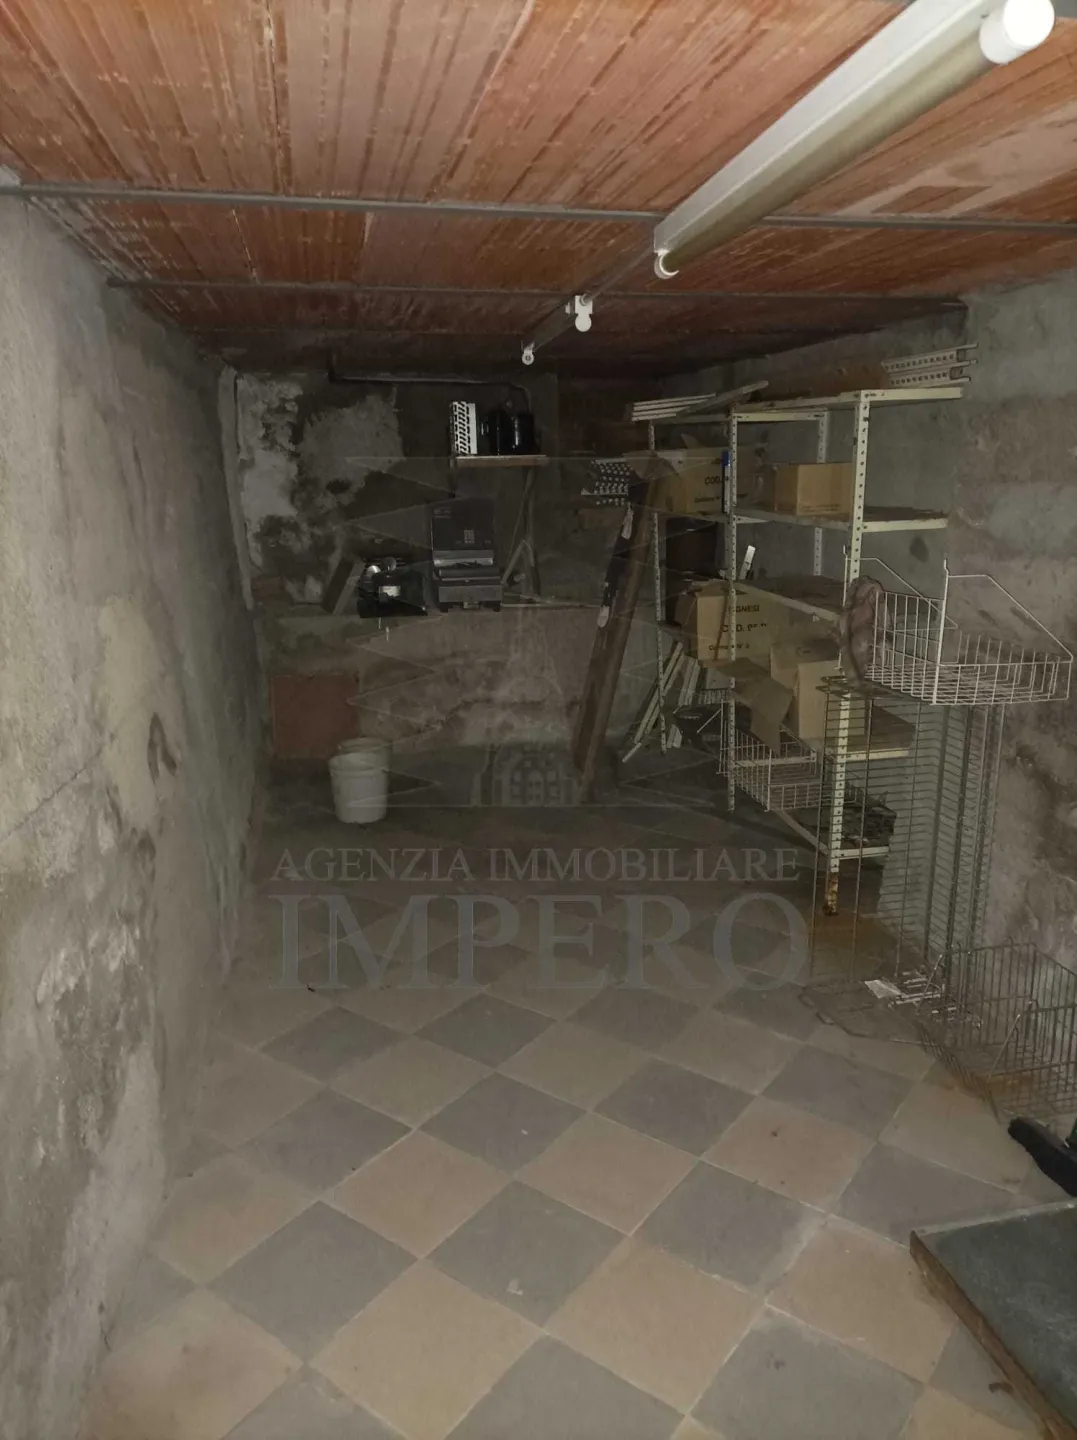 Immagine per Appartamento in vendita a Ventimiglia via Torri Superiore 5